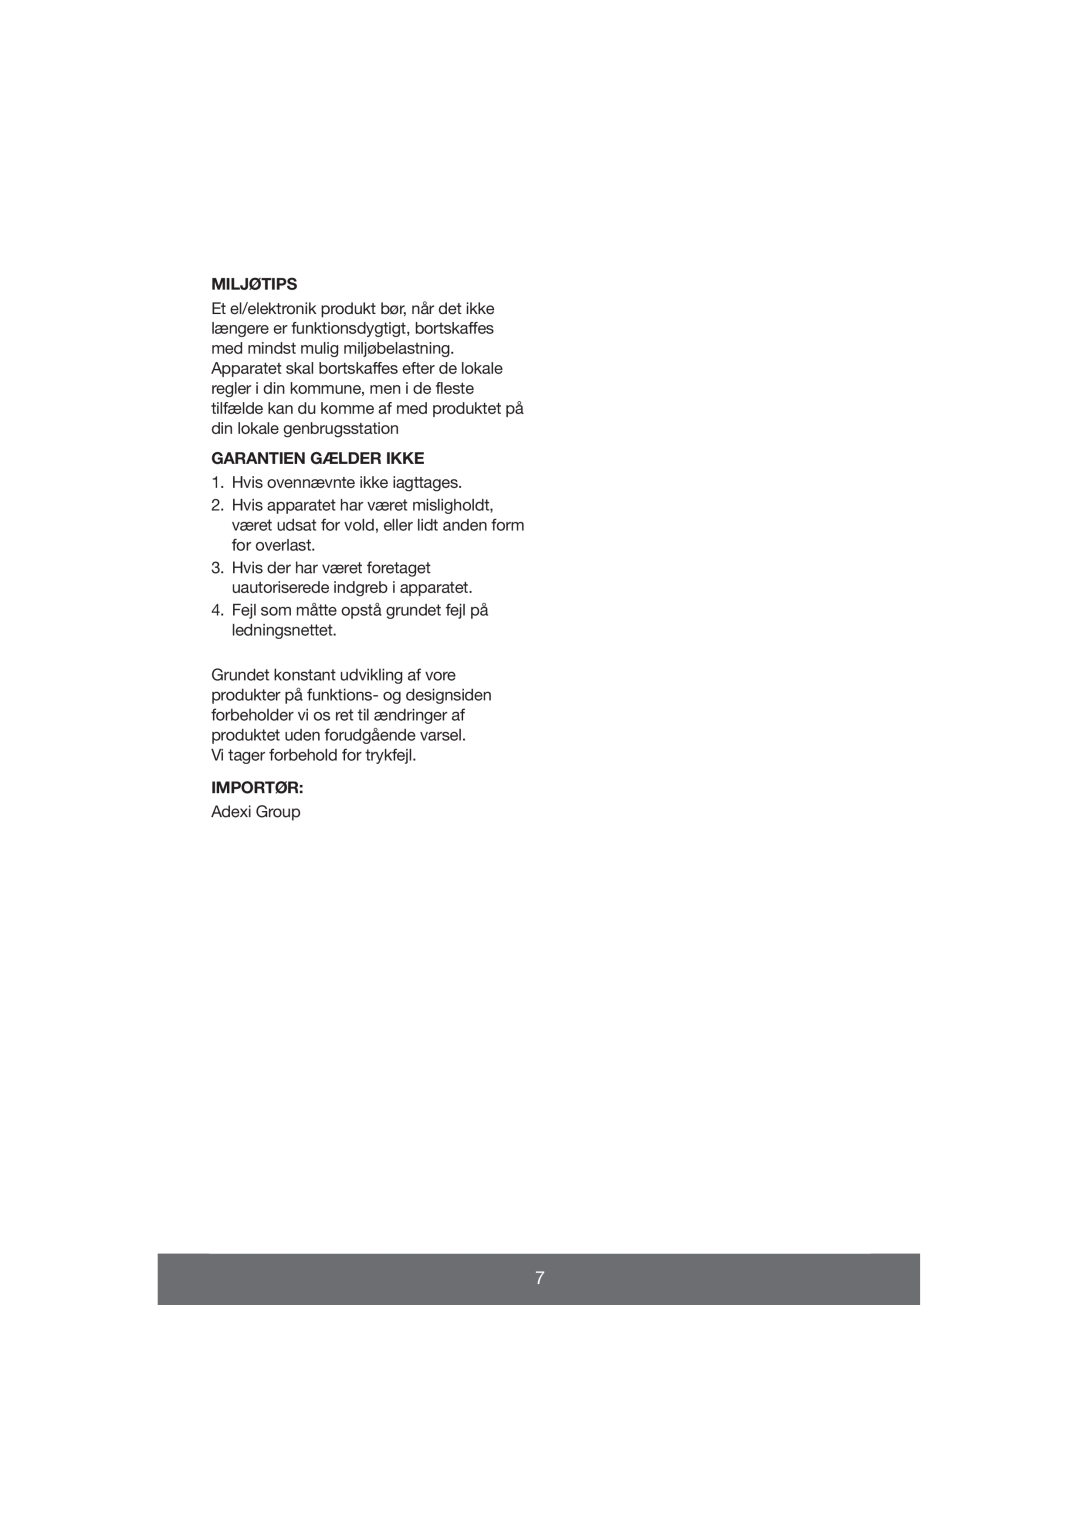 Melissa 643-037 manual Miljøtips, Garantien Gælder Ikke, Importør 